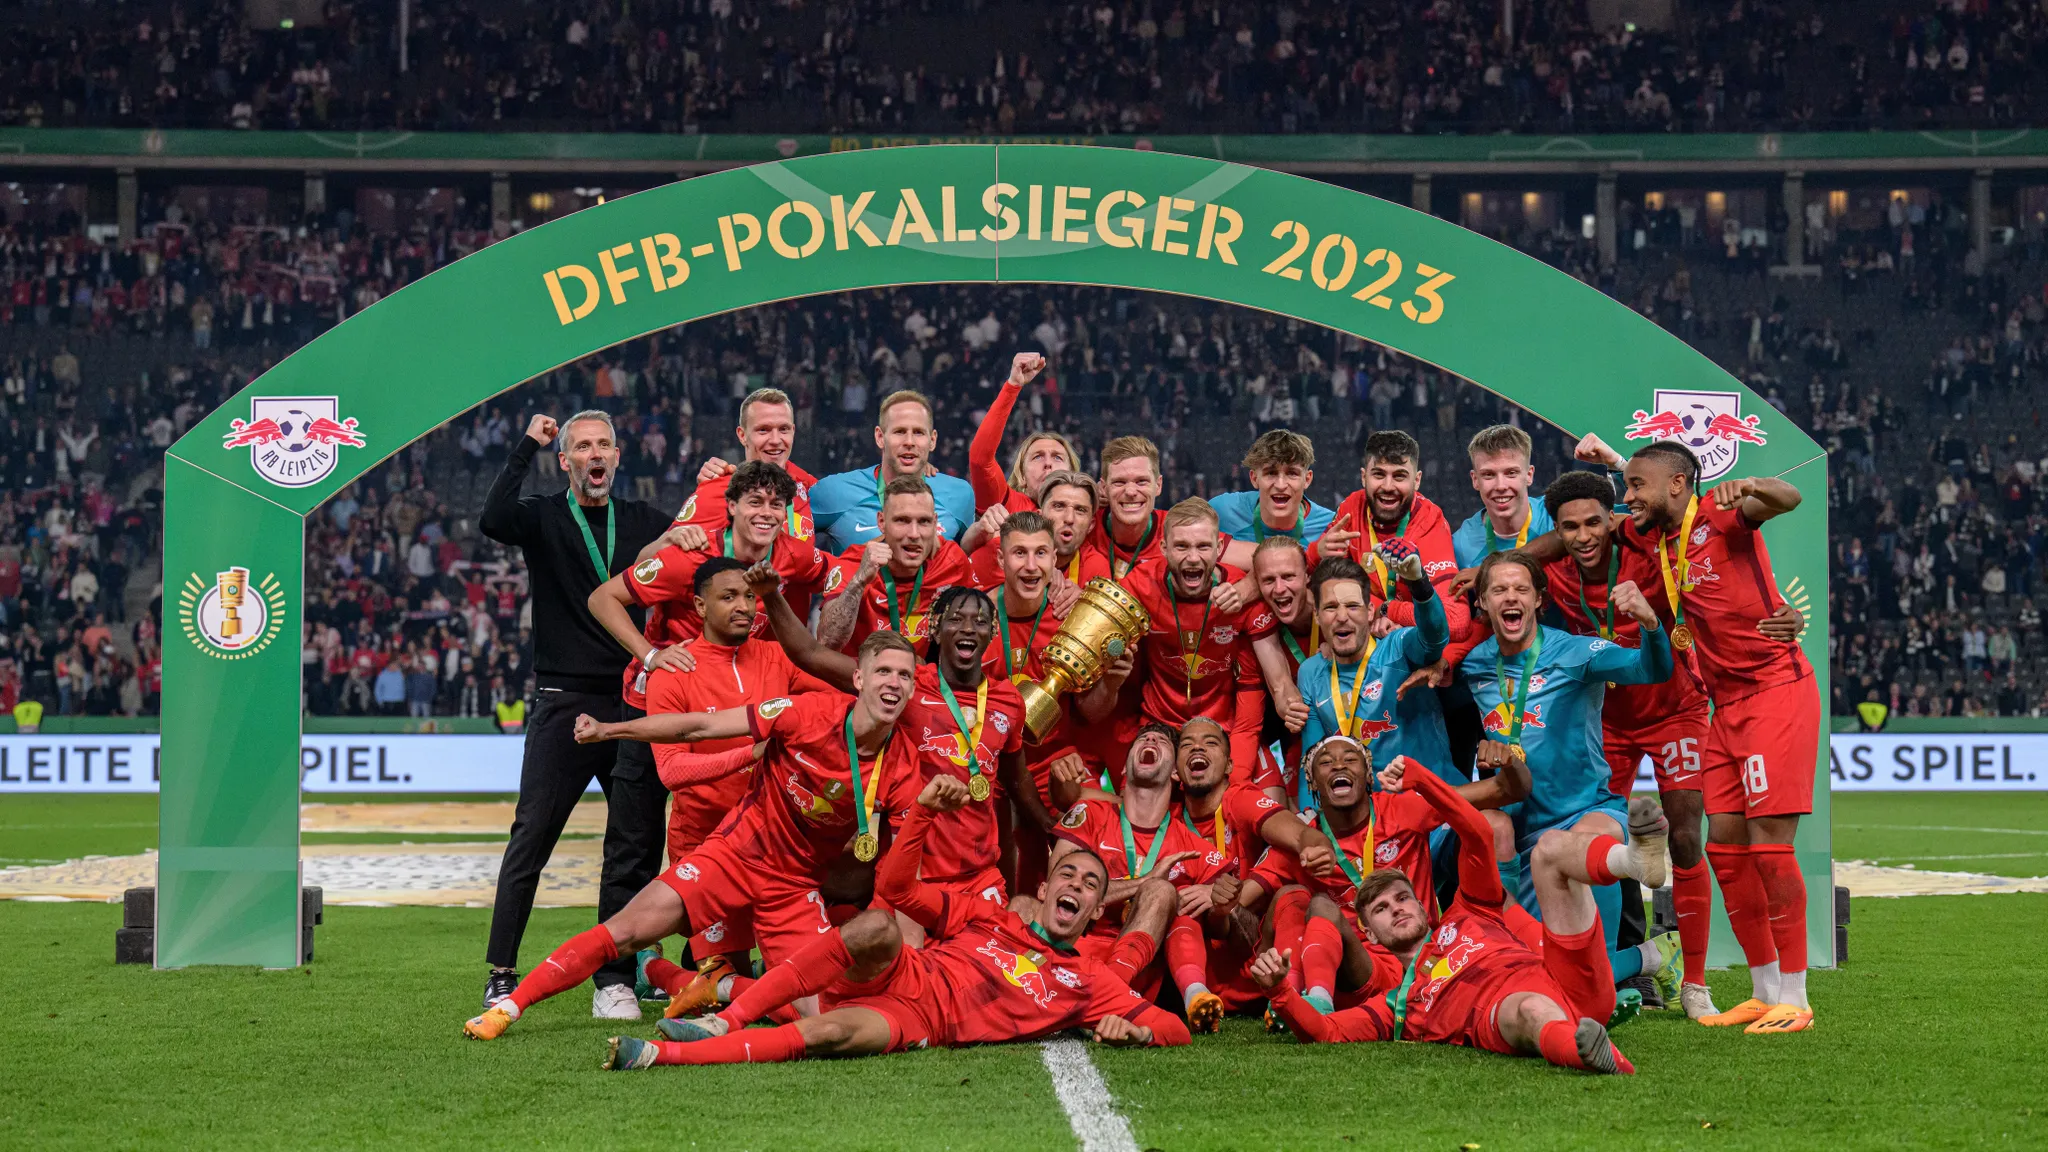 Die Mannschaft von RB Leipzig feiert den Sieg des SFB-Pokals 2023